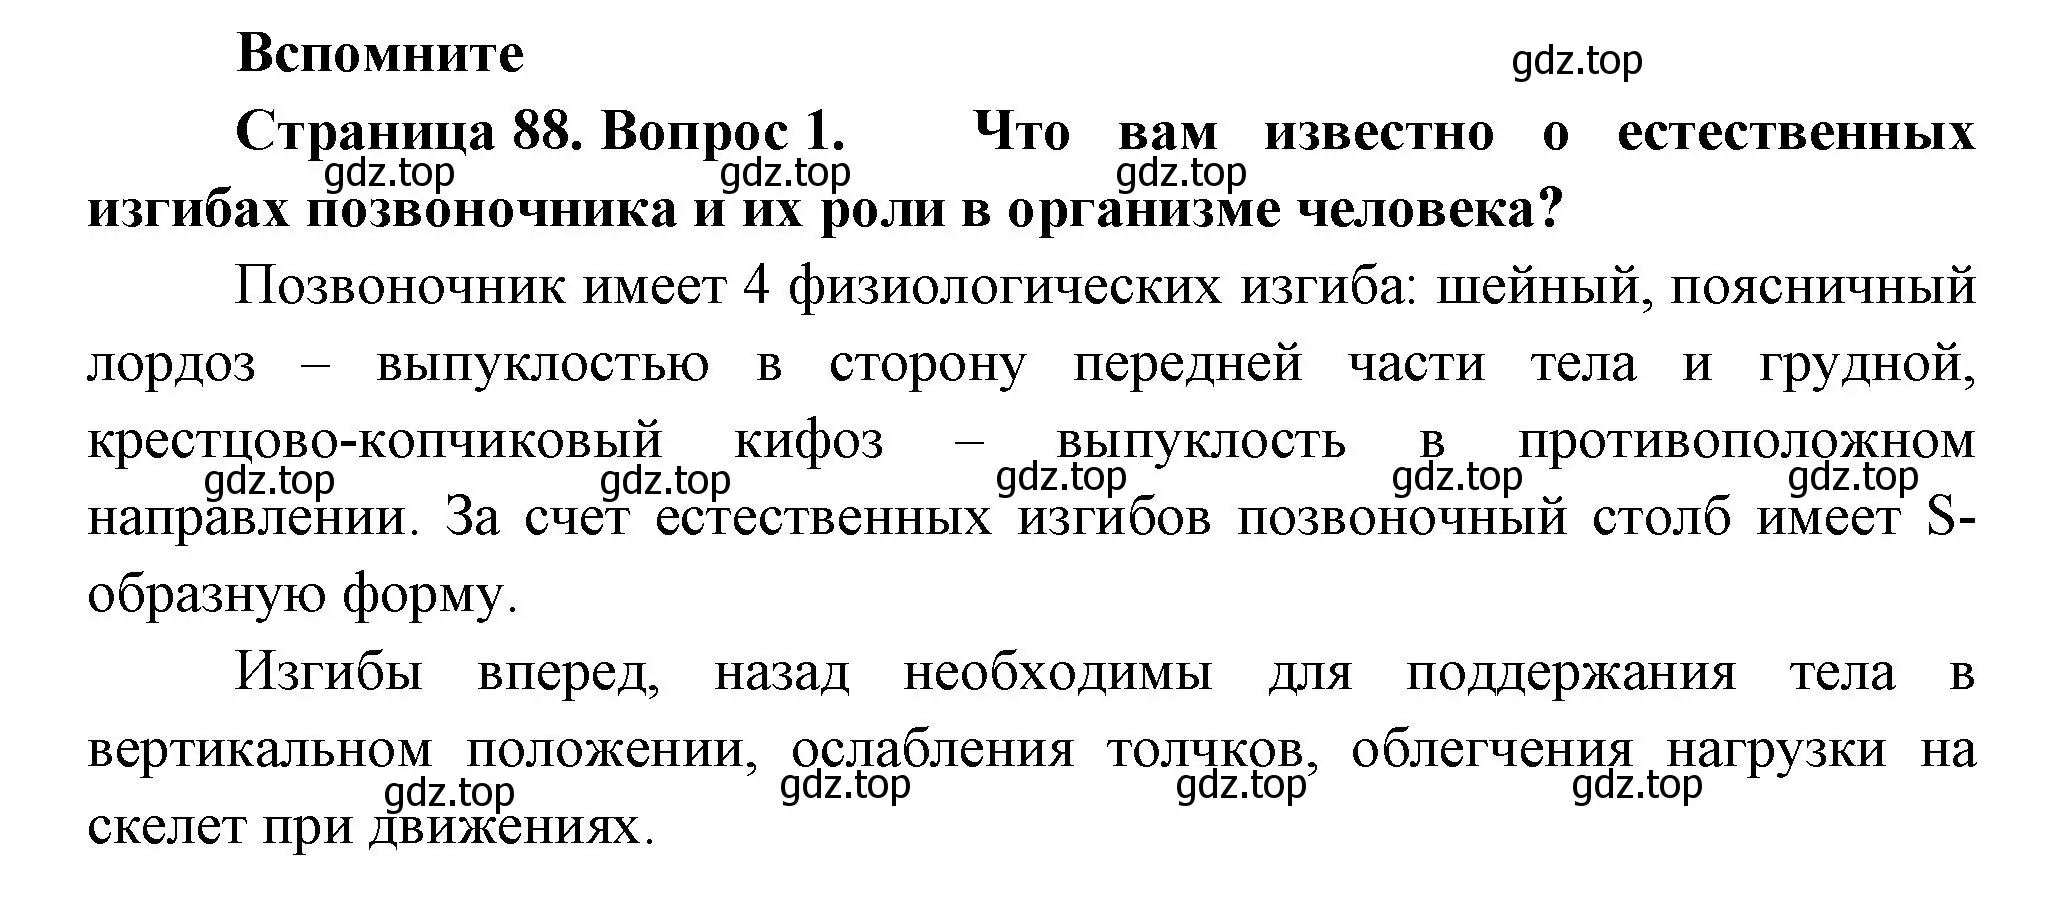 Решение номер 1 (страница 88) гдз по биологии 9 класс Пасечник, Каменский, учебник